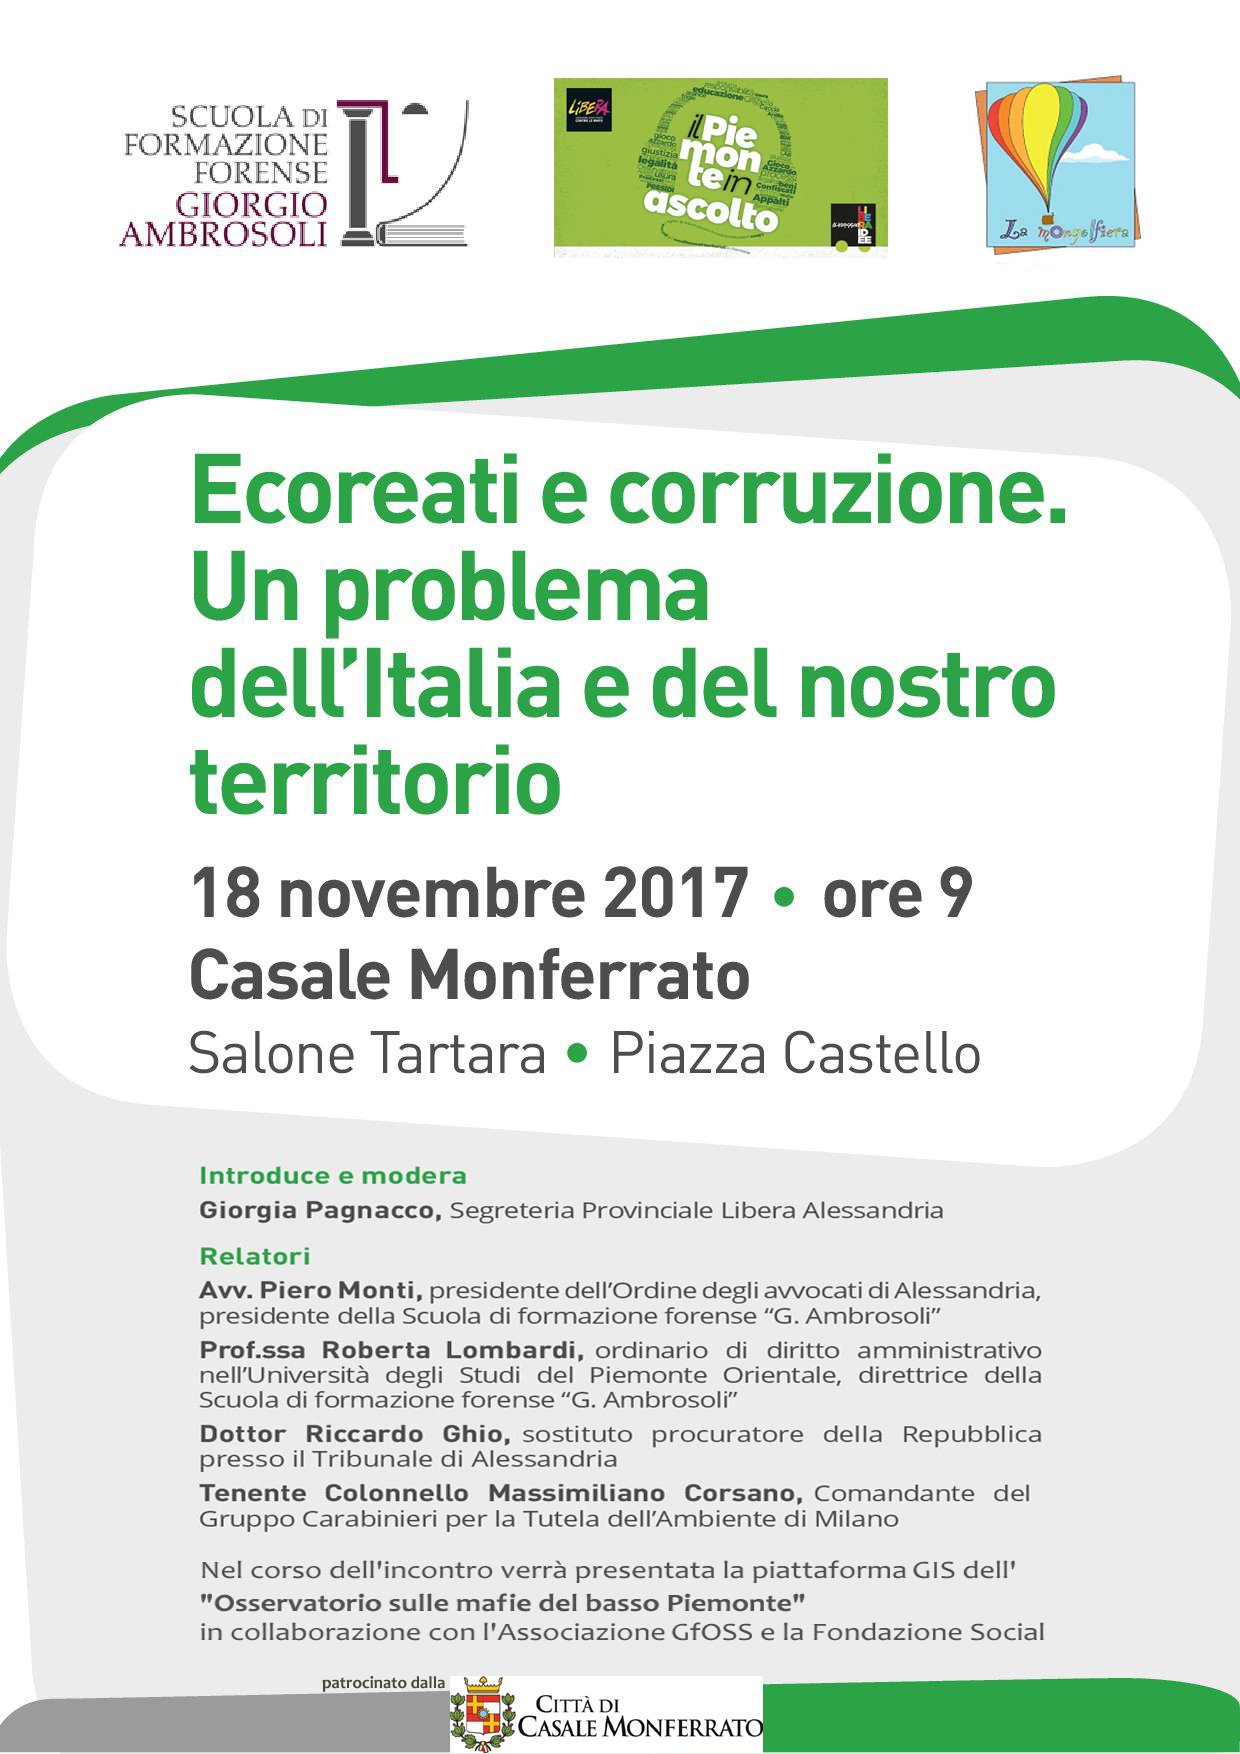 Ecoreati e corruzione: un problema dell’Italia e del nostro territorio